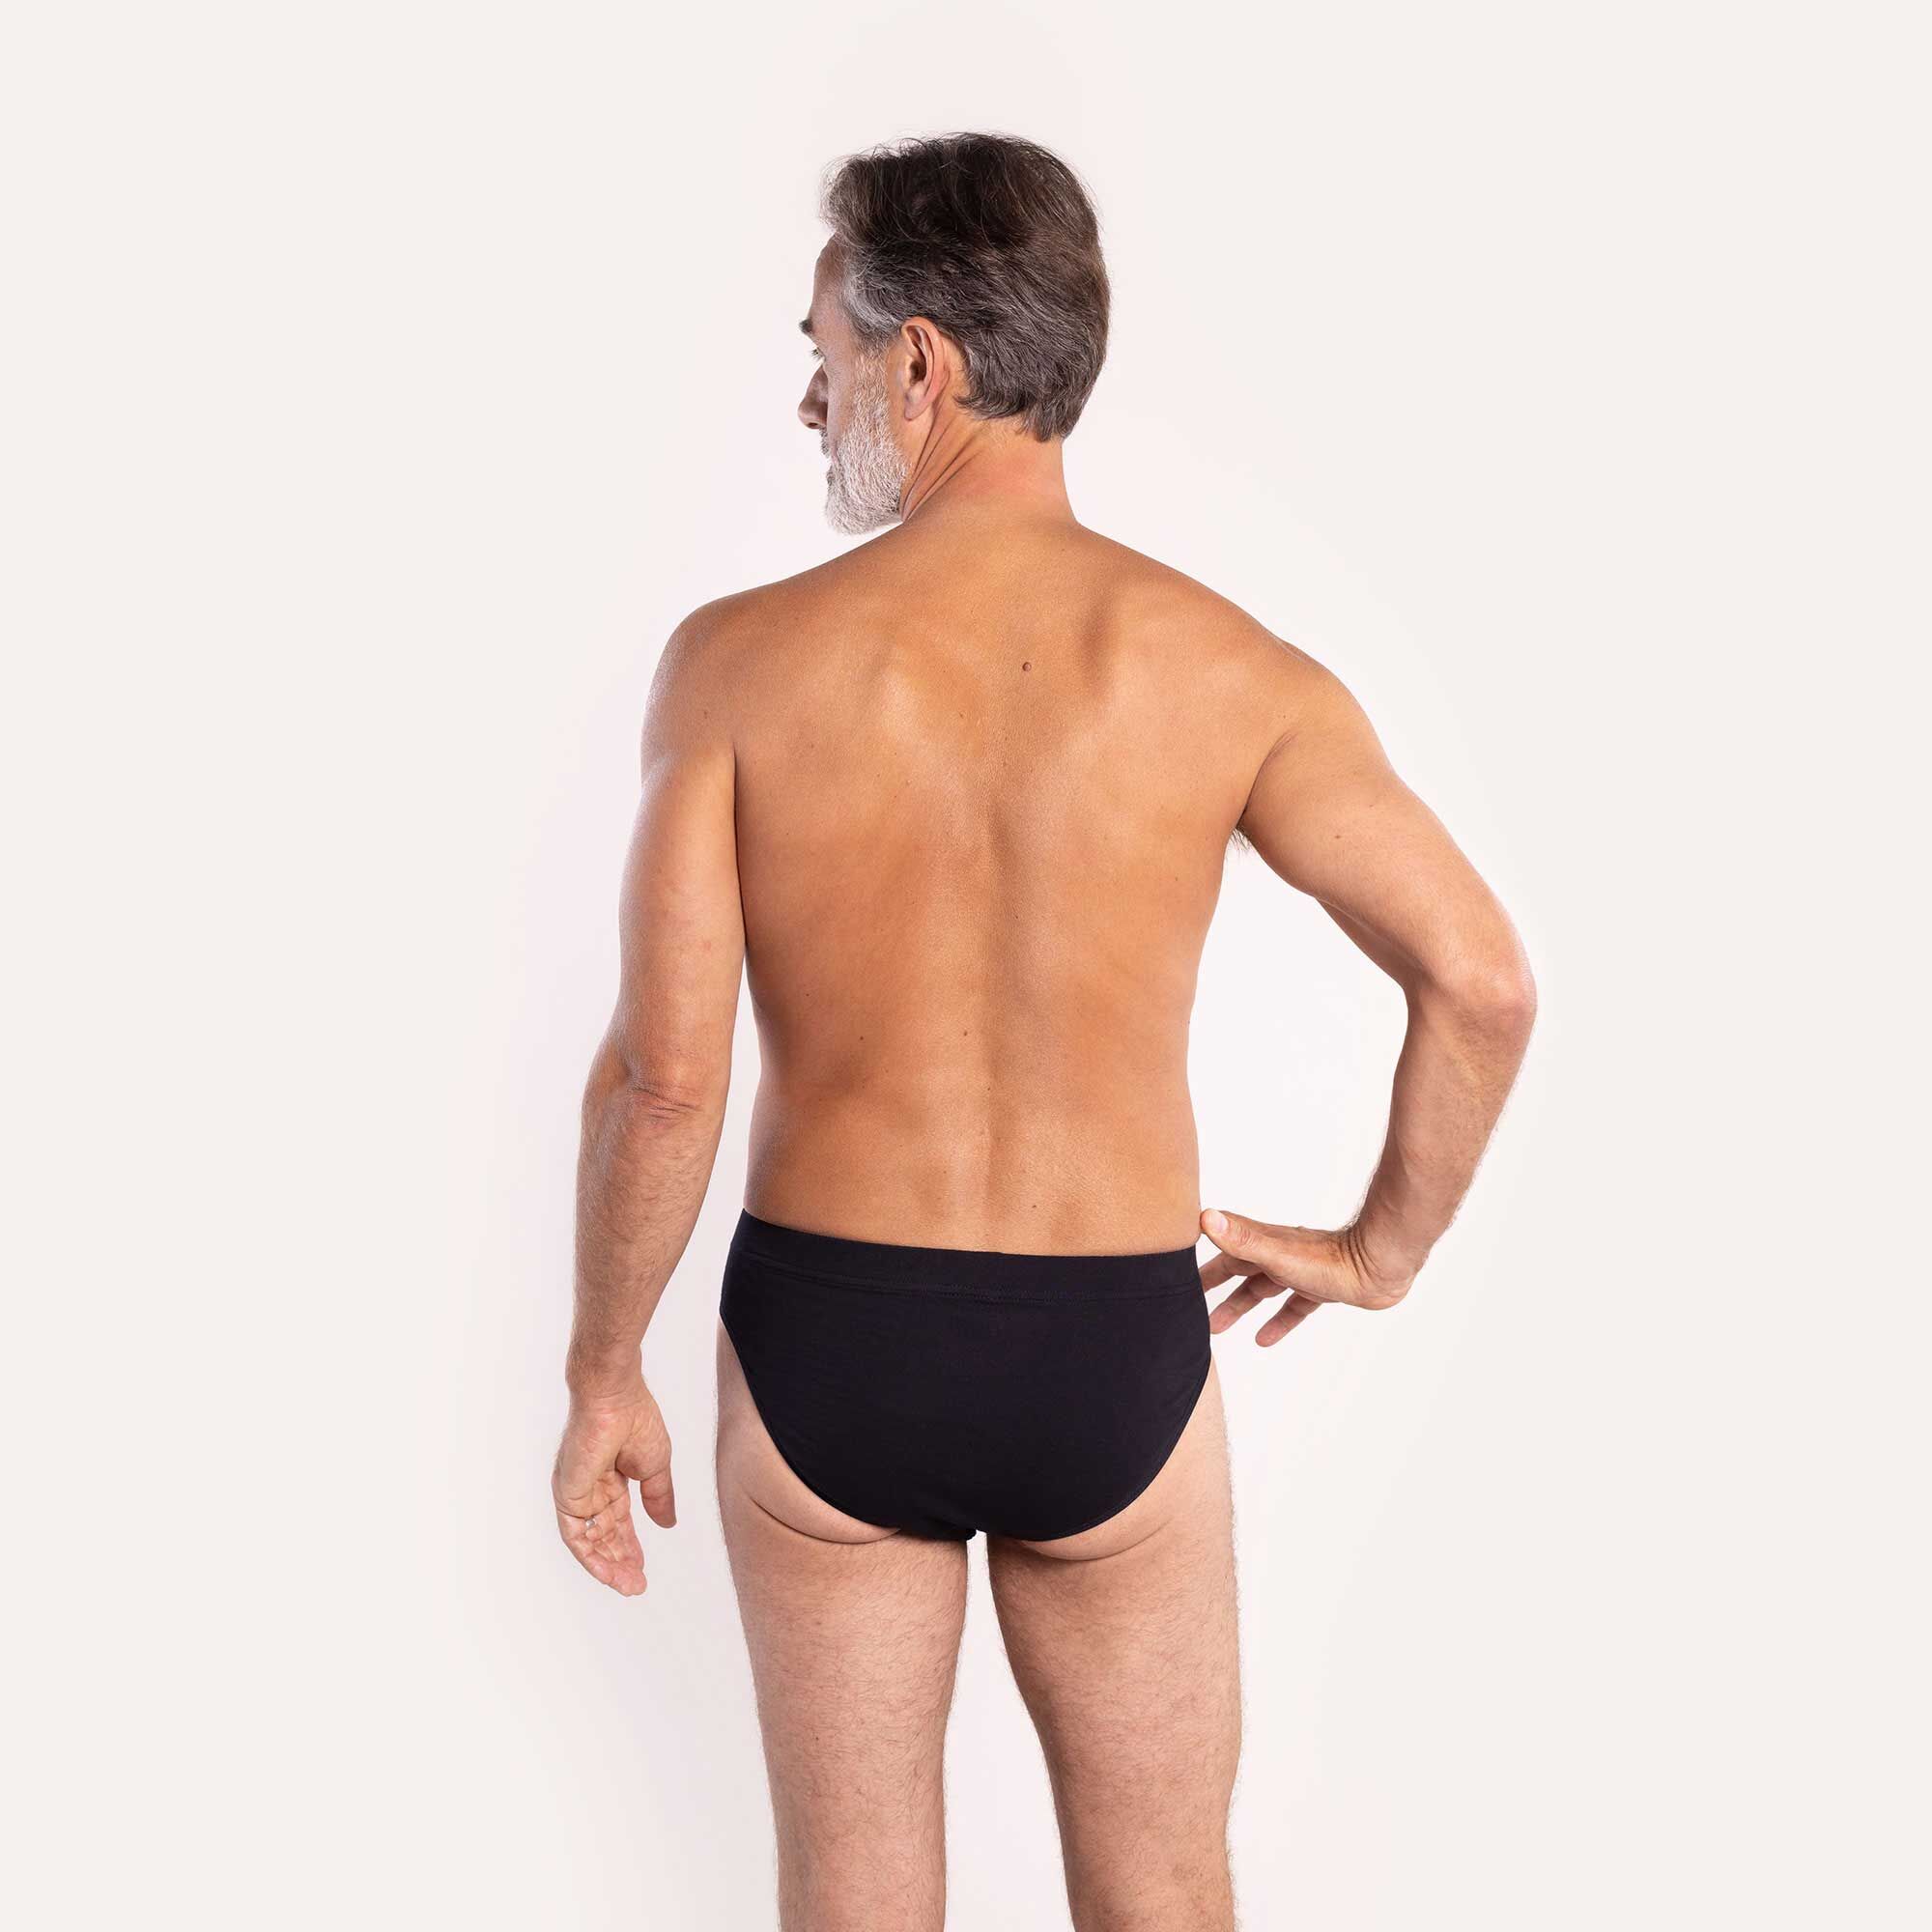 Bladder weakness underwear briefs (Multipack of 5)